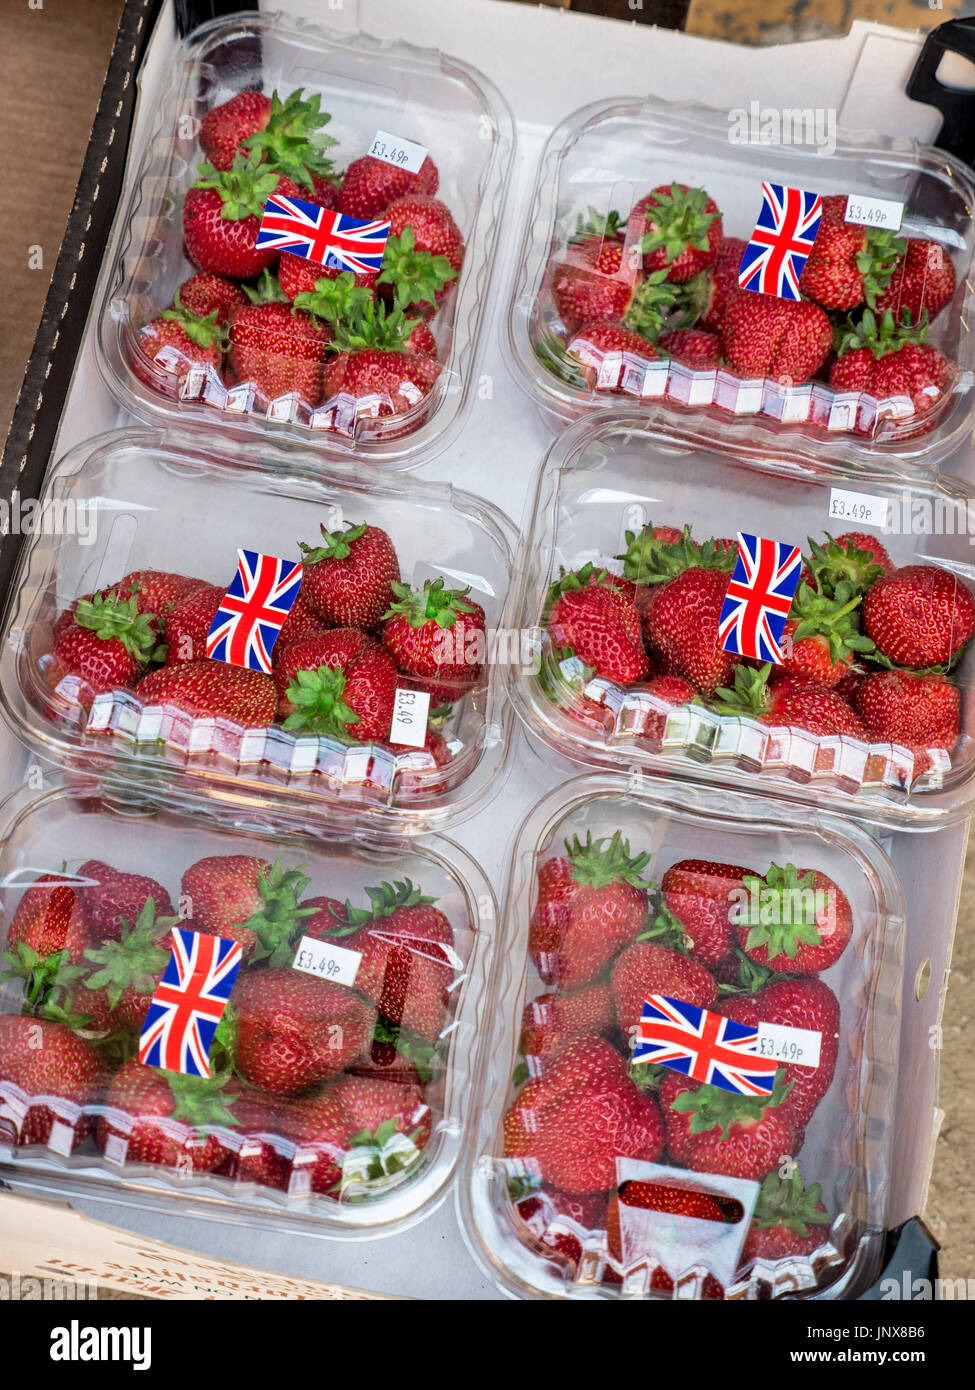 La fraises à l'afficher en clair dans le marché des conteneurs en plastique punnett avec motif Union Jack flag Banque D'Images